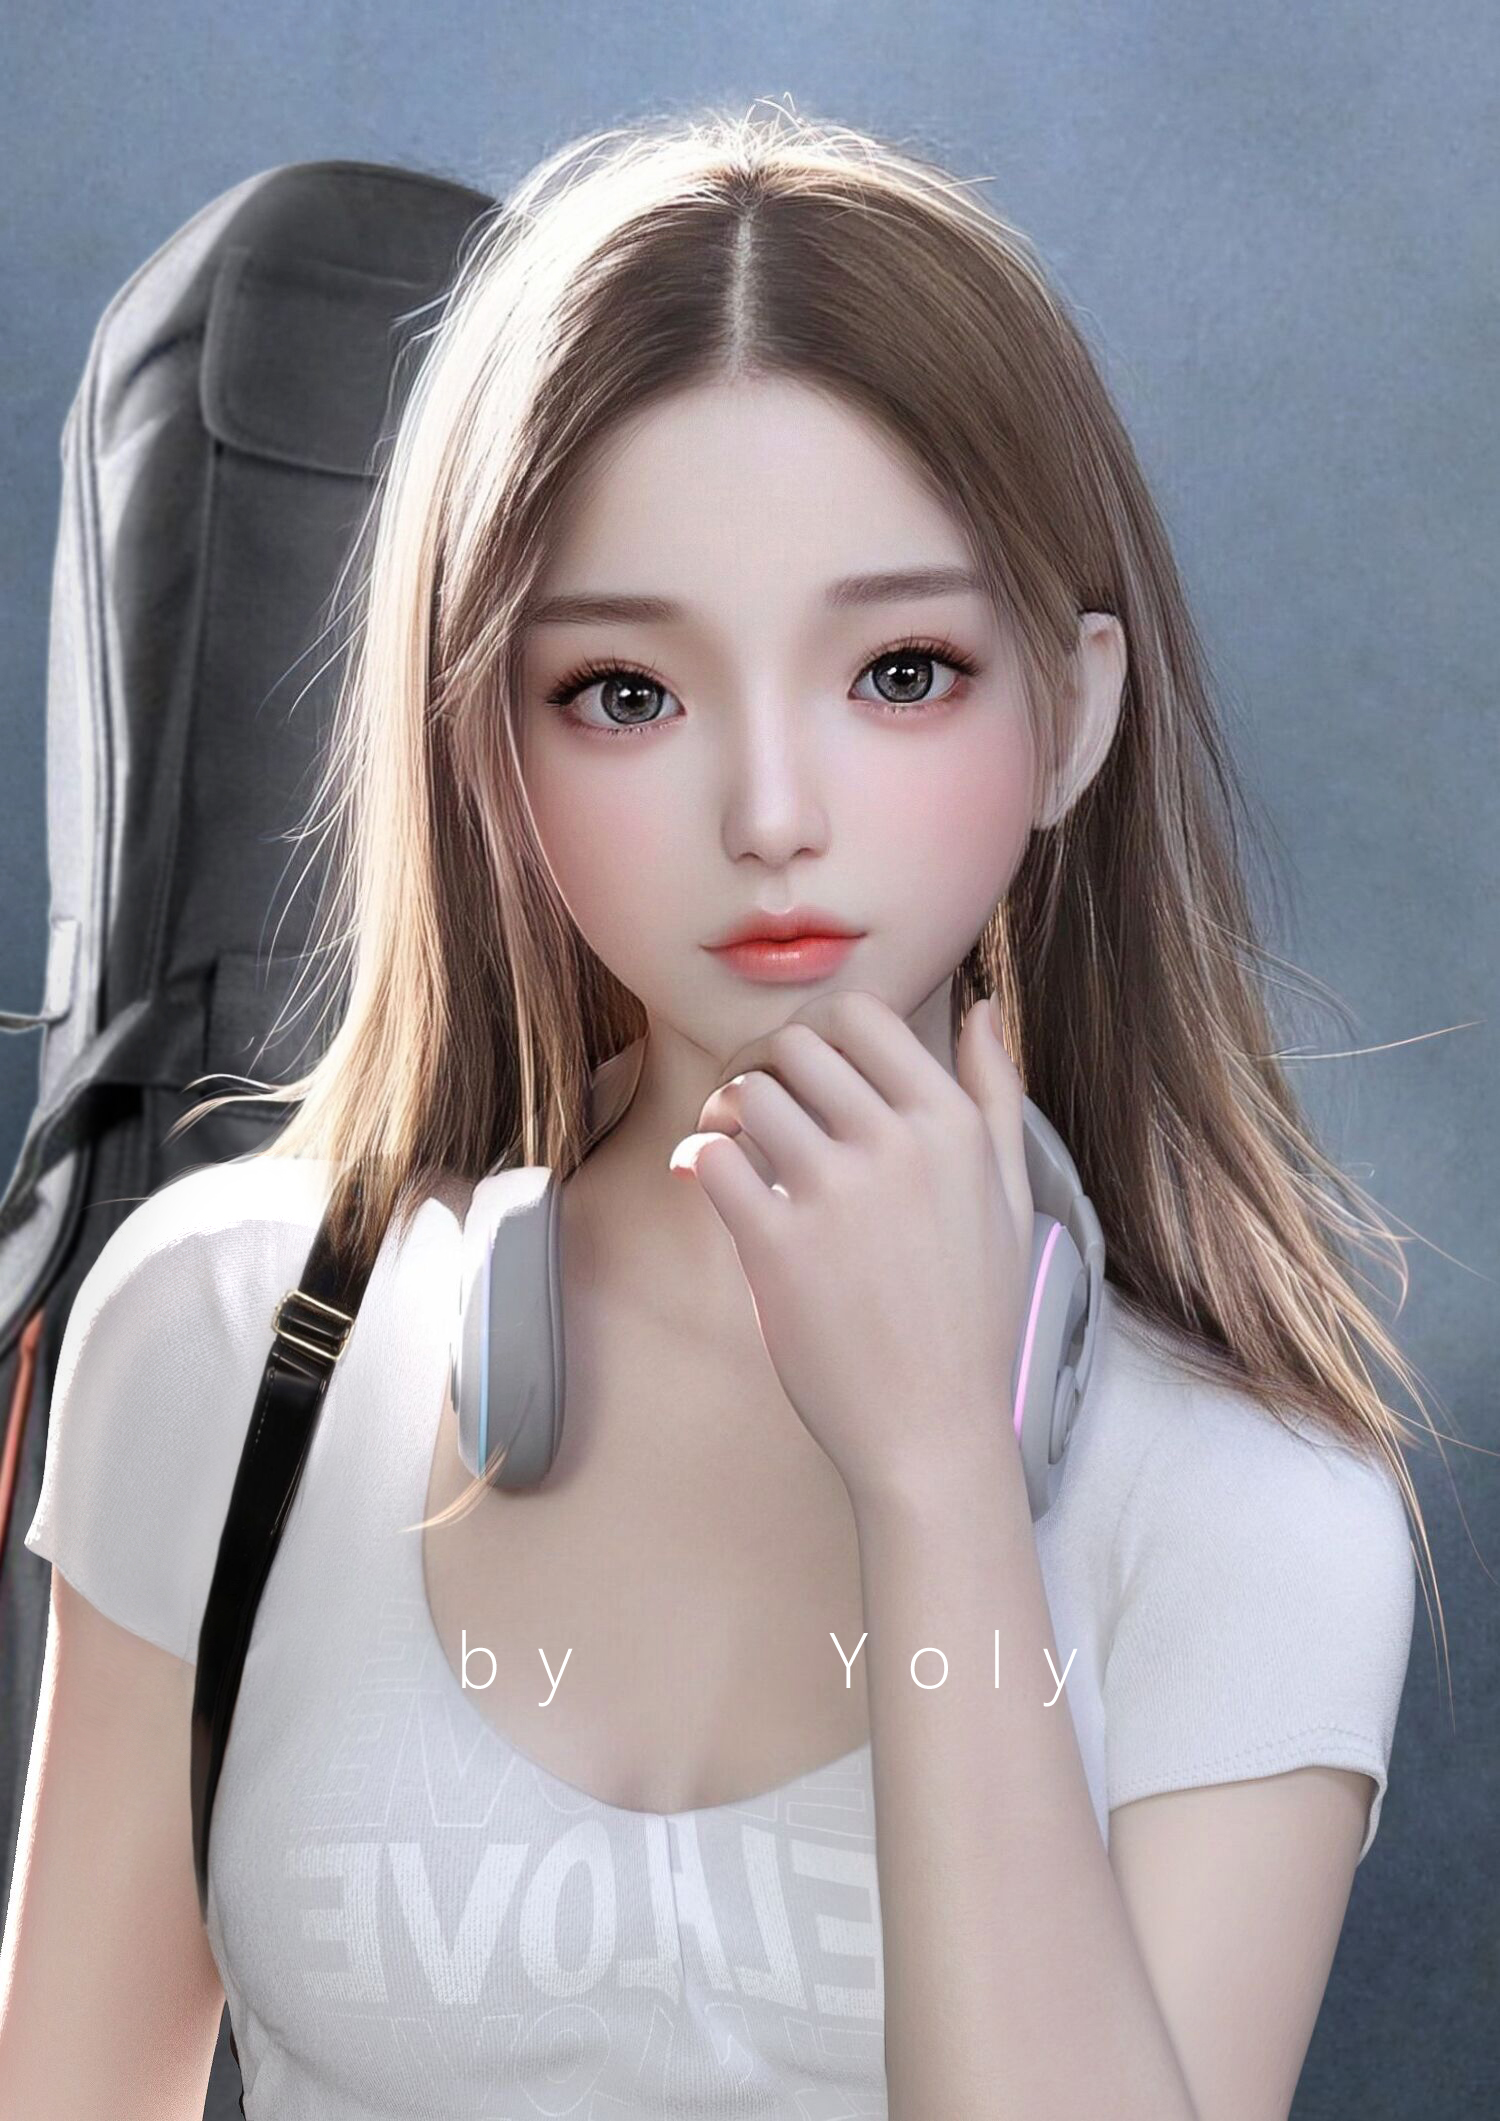 General 1500x2121 Yoly Asian women CGI digital art long hair headphones